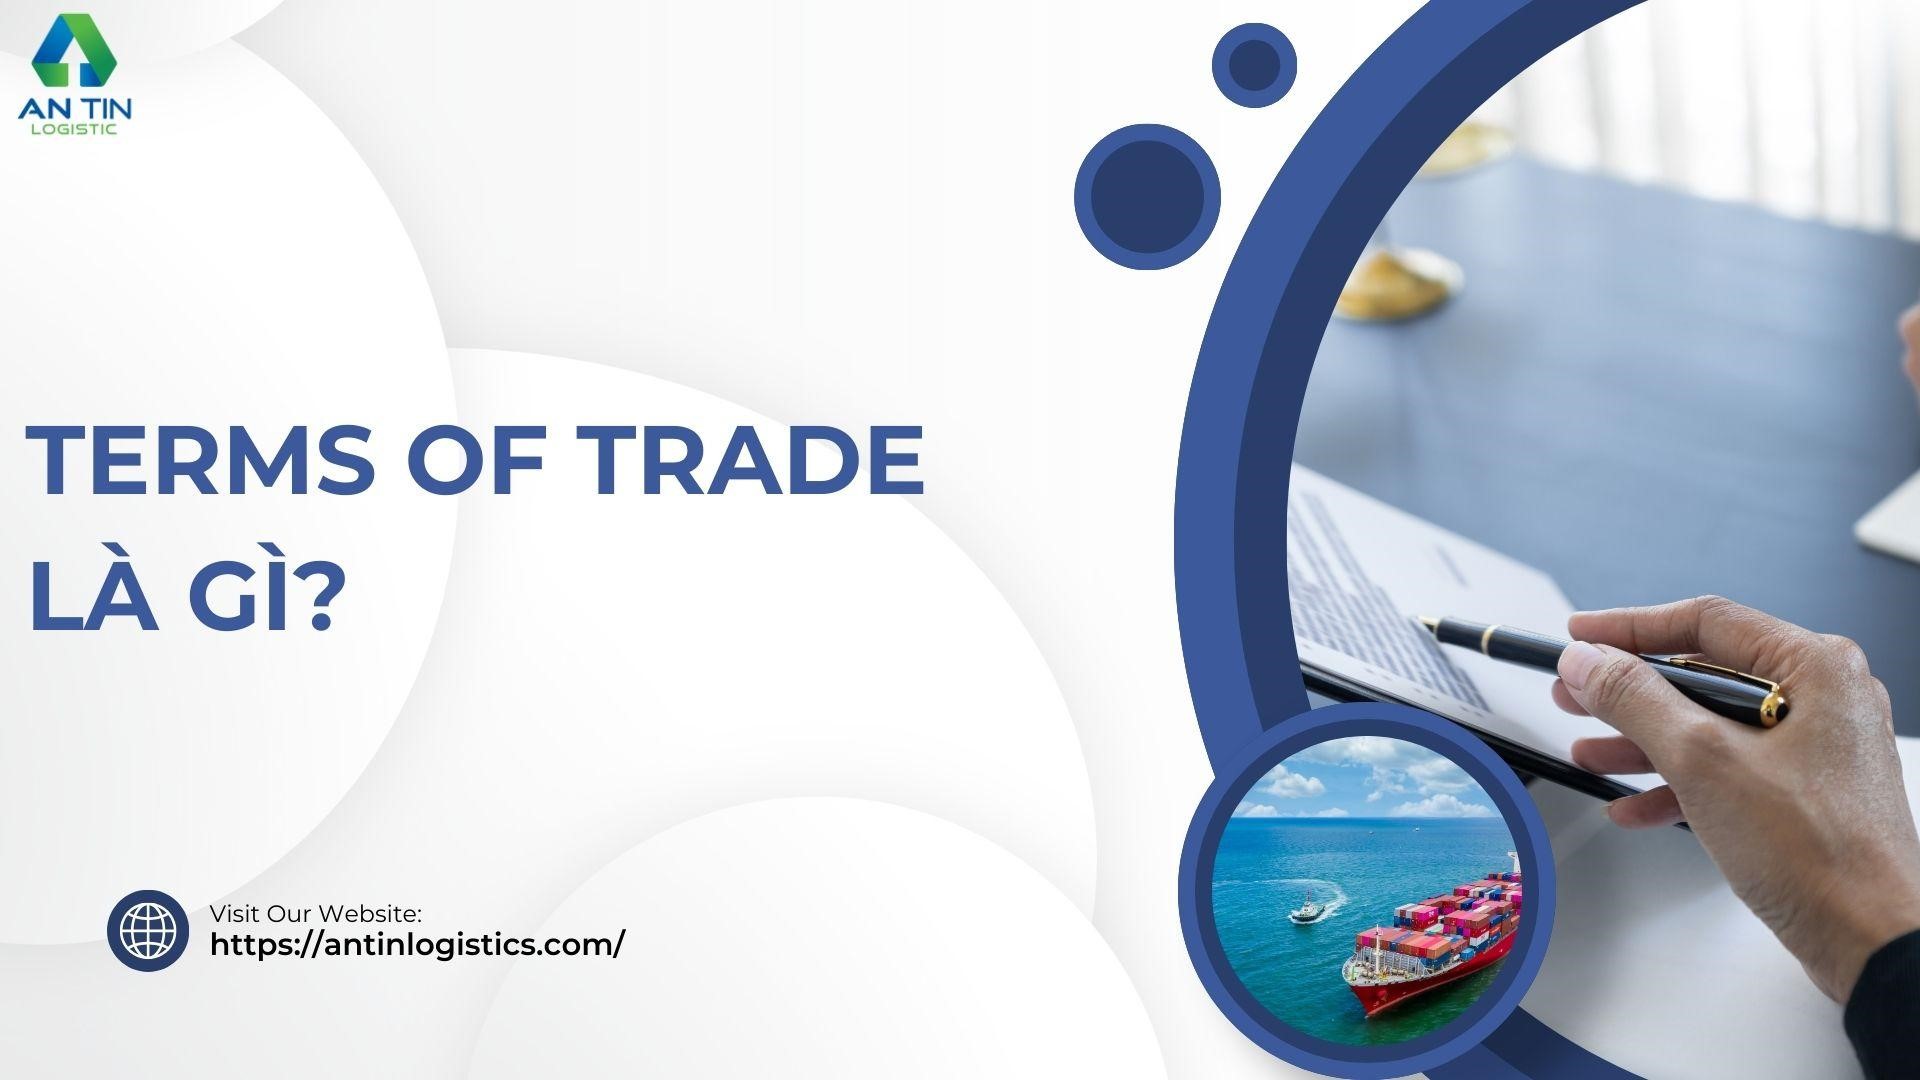 Terms of Trade là gì?